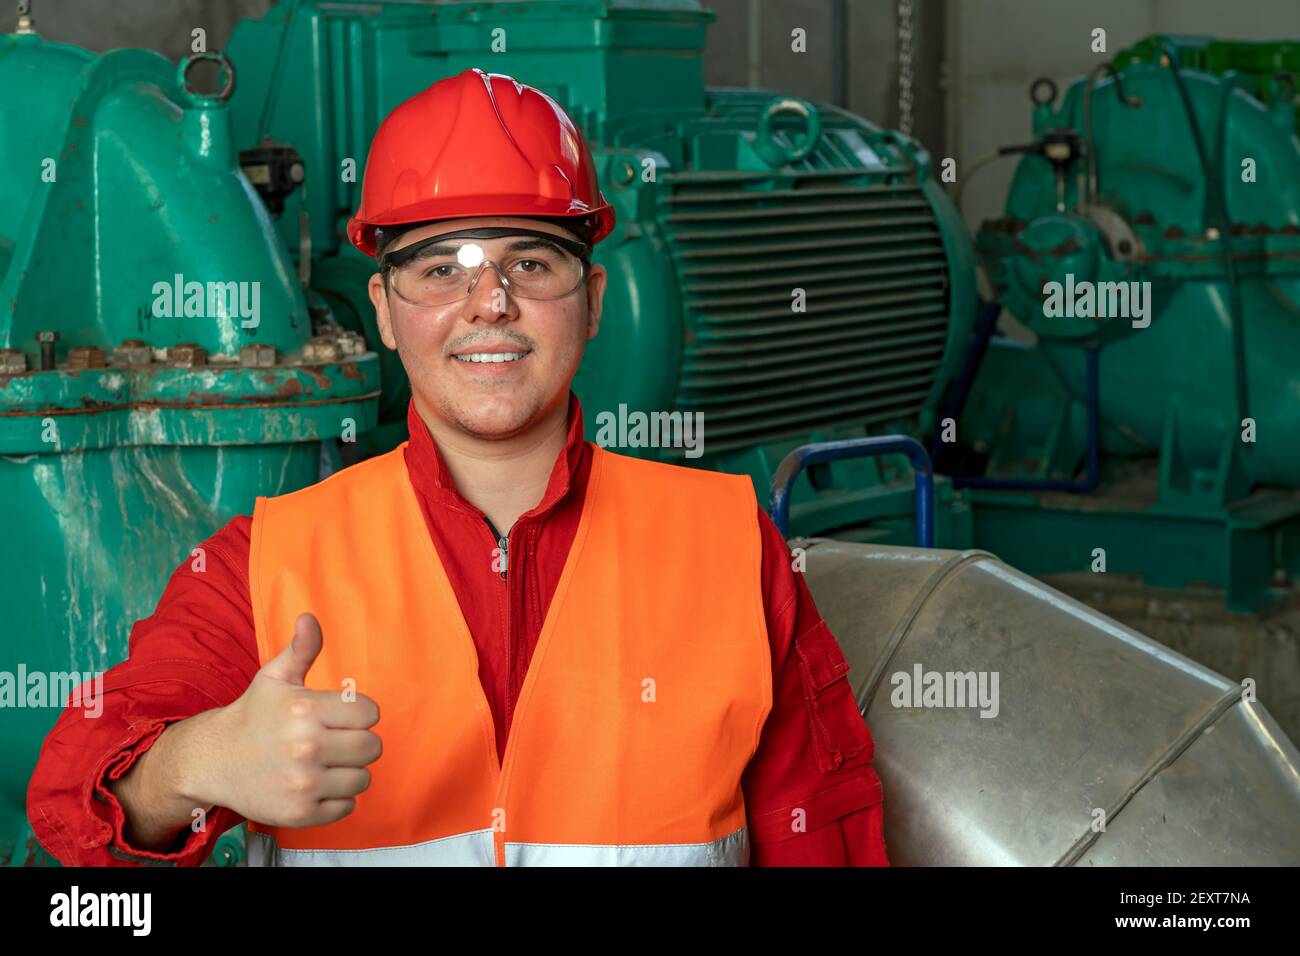 Porträt eines lächelnden jungen Arbeiters mit Daumen nach oben im Fernwärmekraftwerk. Arbeiter in persönlicher Schutzausrüstung, der die Kamera betrachtet. Stockfoto